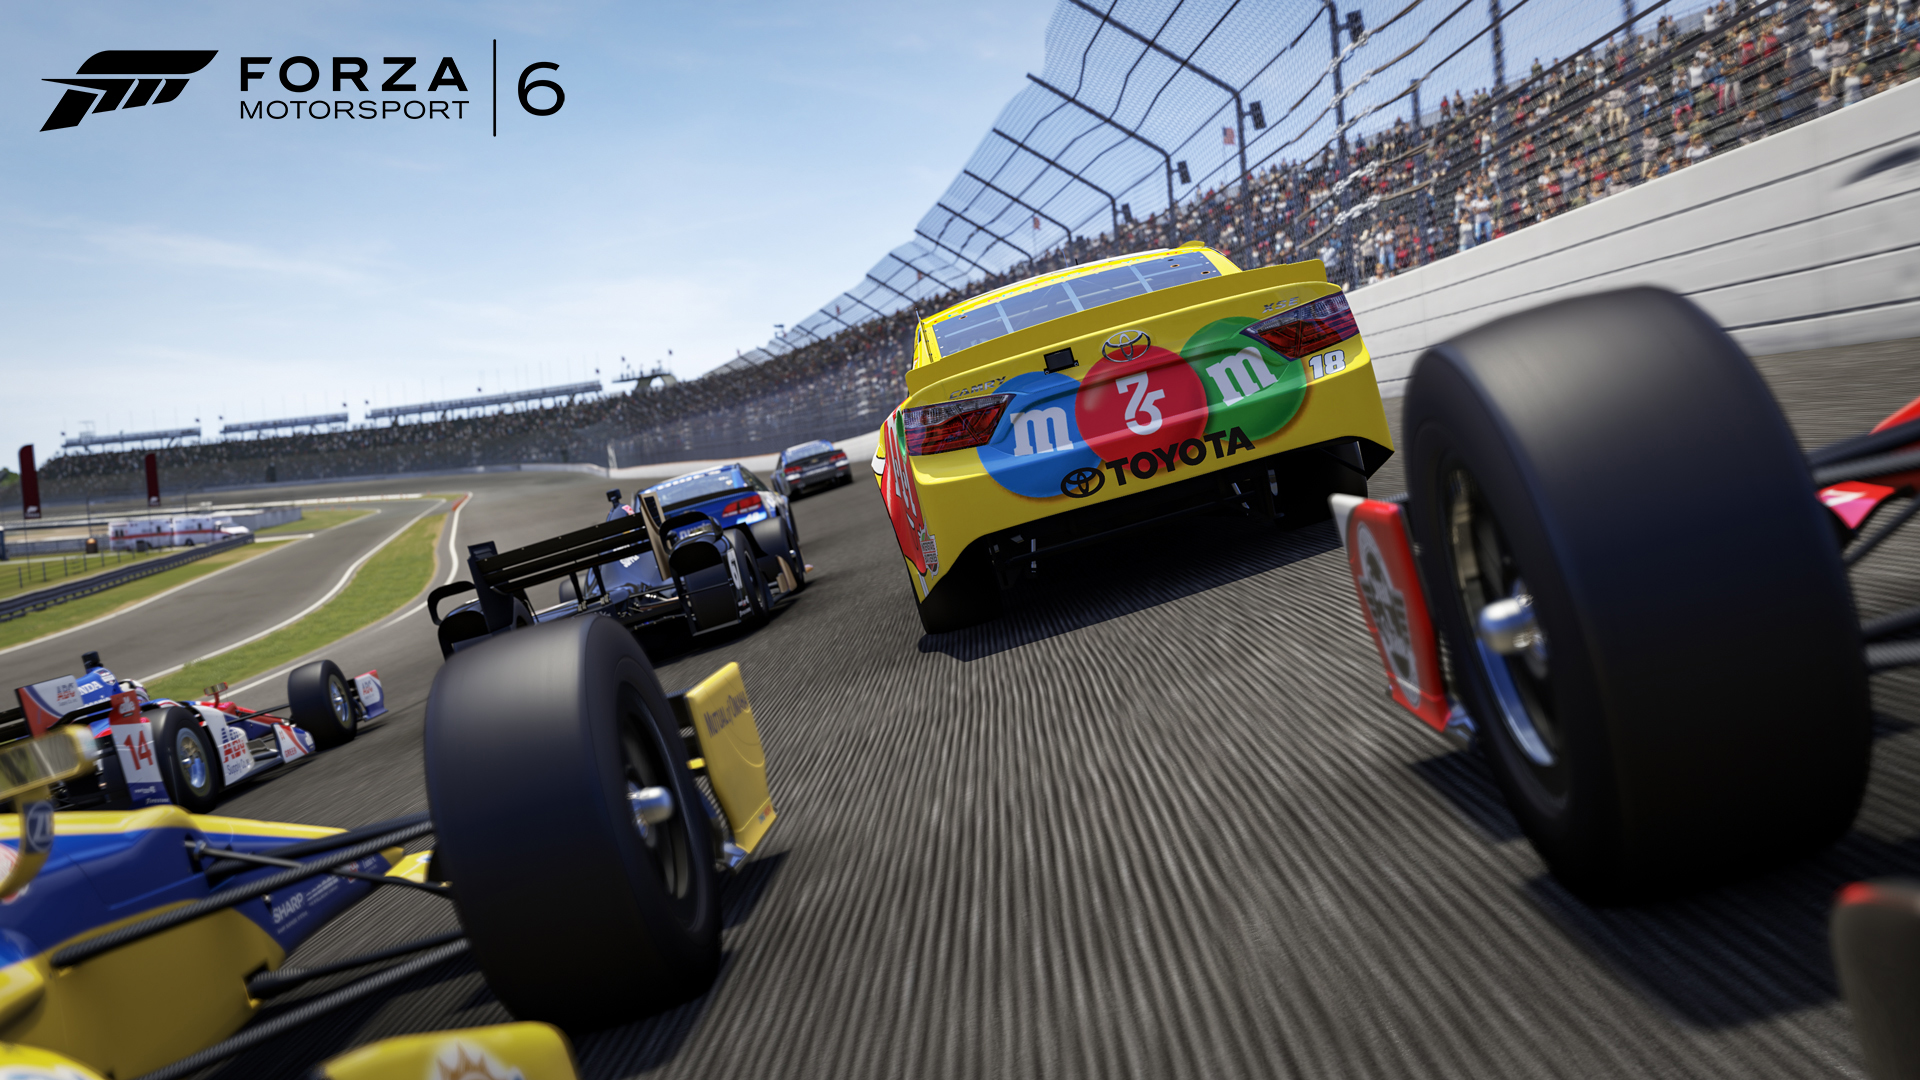 Descarga gratuita de fondo de pantalla para móvil de Fuerza, Forza Motorsport 6, Videojuego.